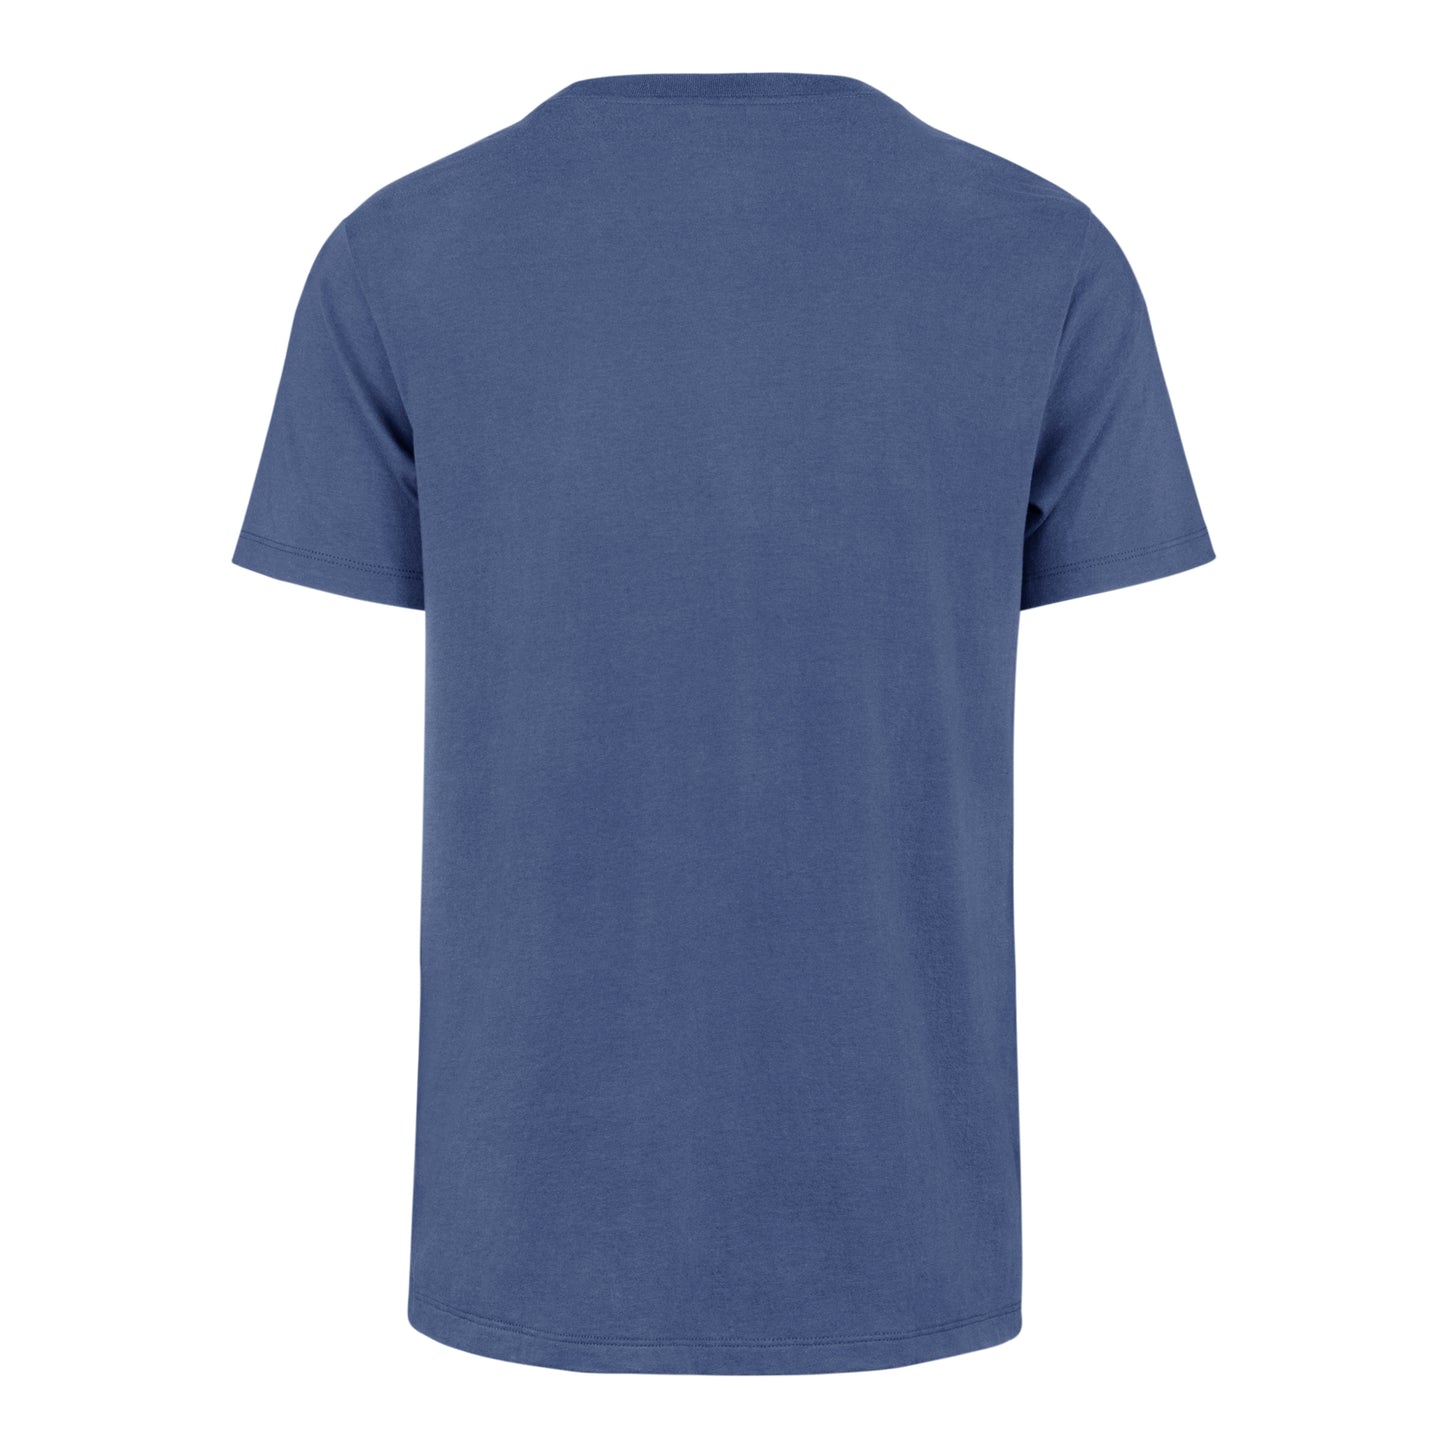 Chicago Cubs '47 Franklin Cadet Blue Pride T-Shirts